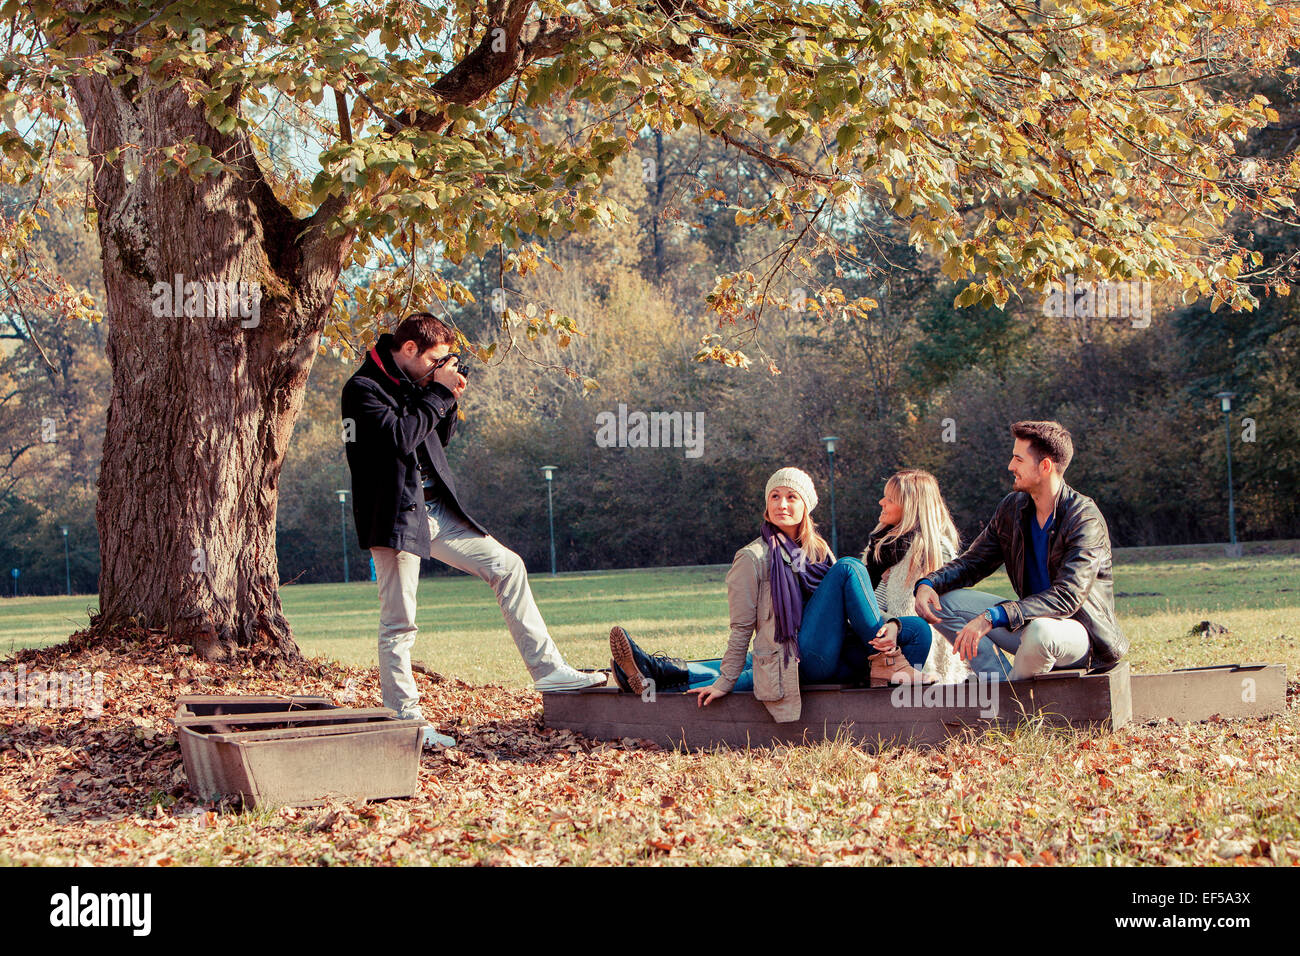 Mann, ein Bild von Freunden im Herbst park Stockfoto